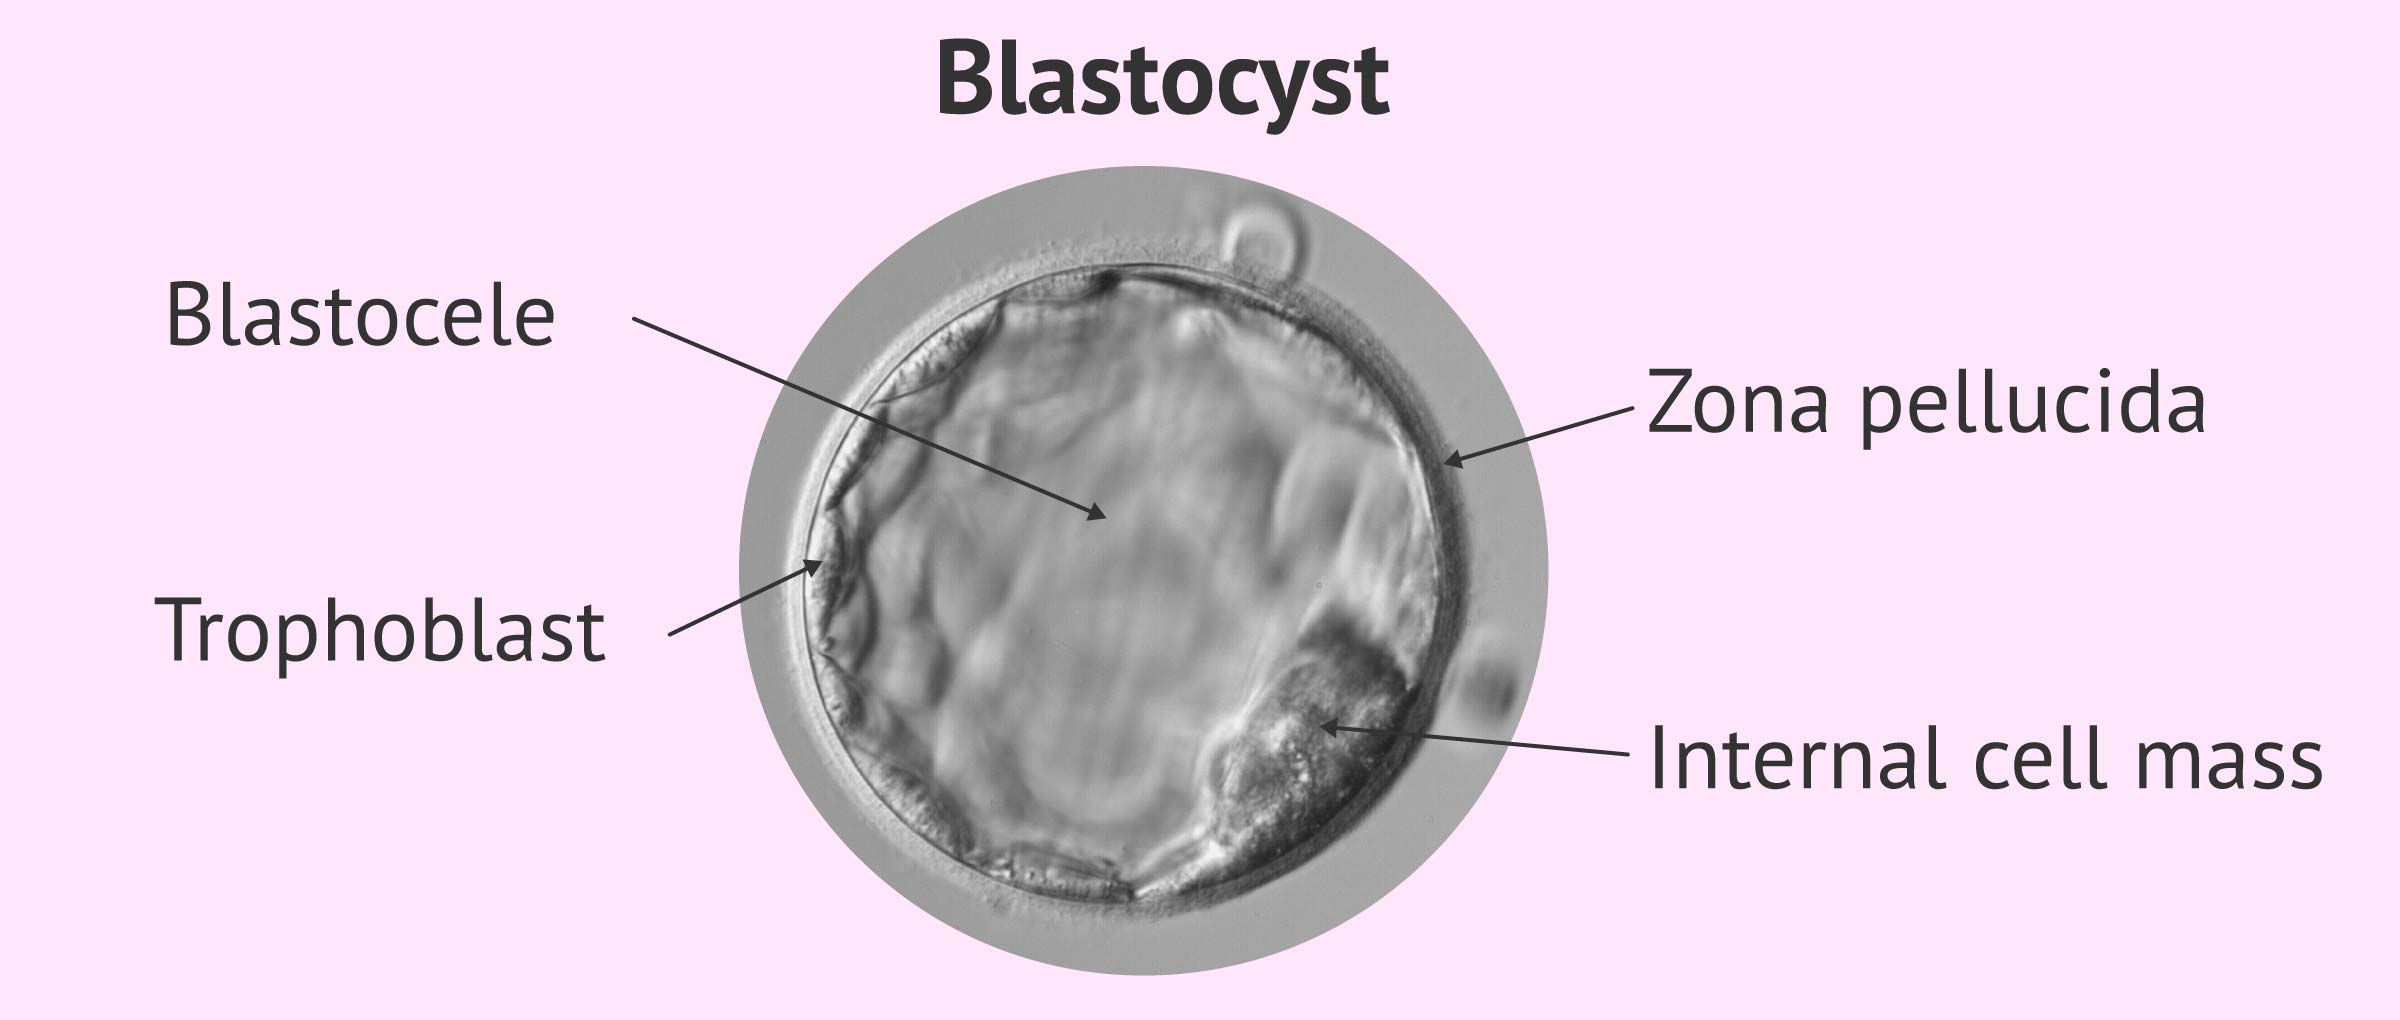 Como saber si se implanta el embrion